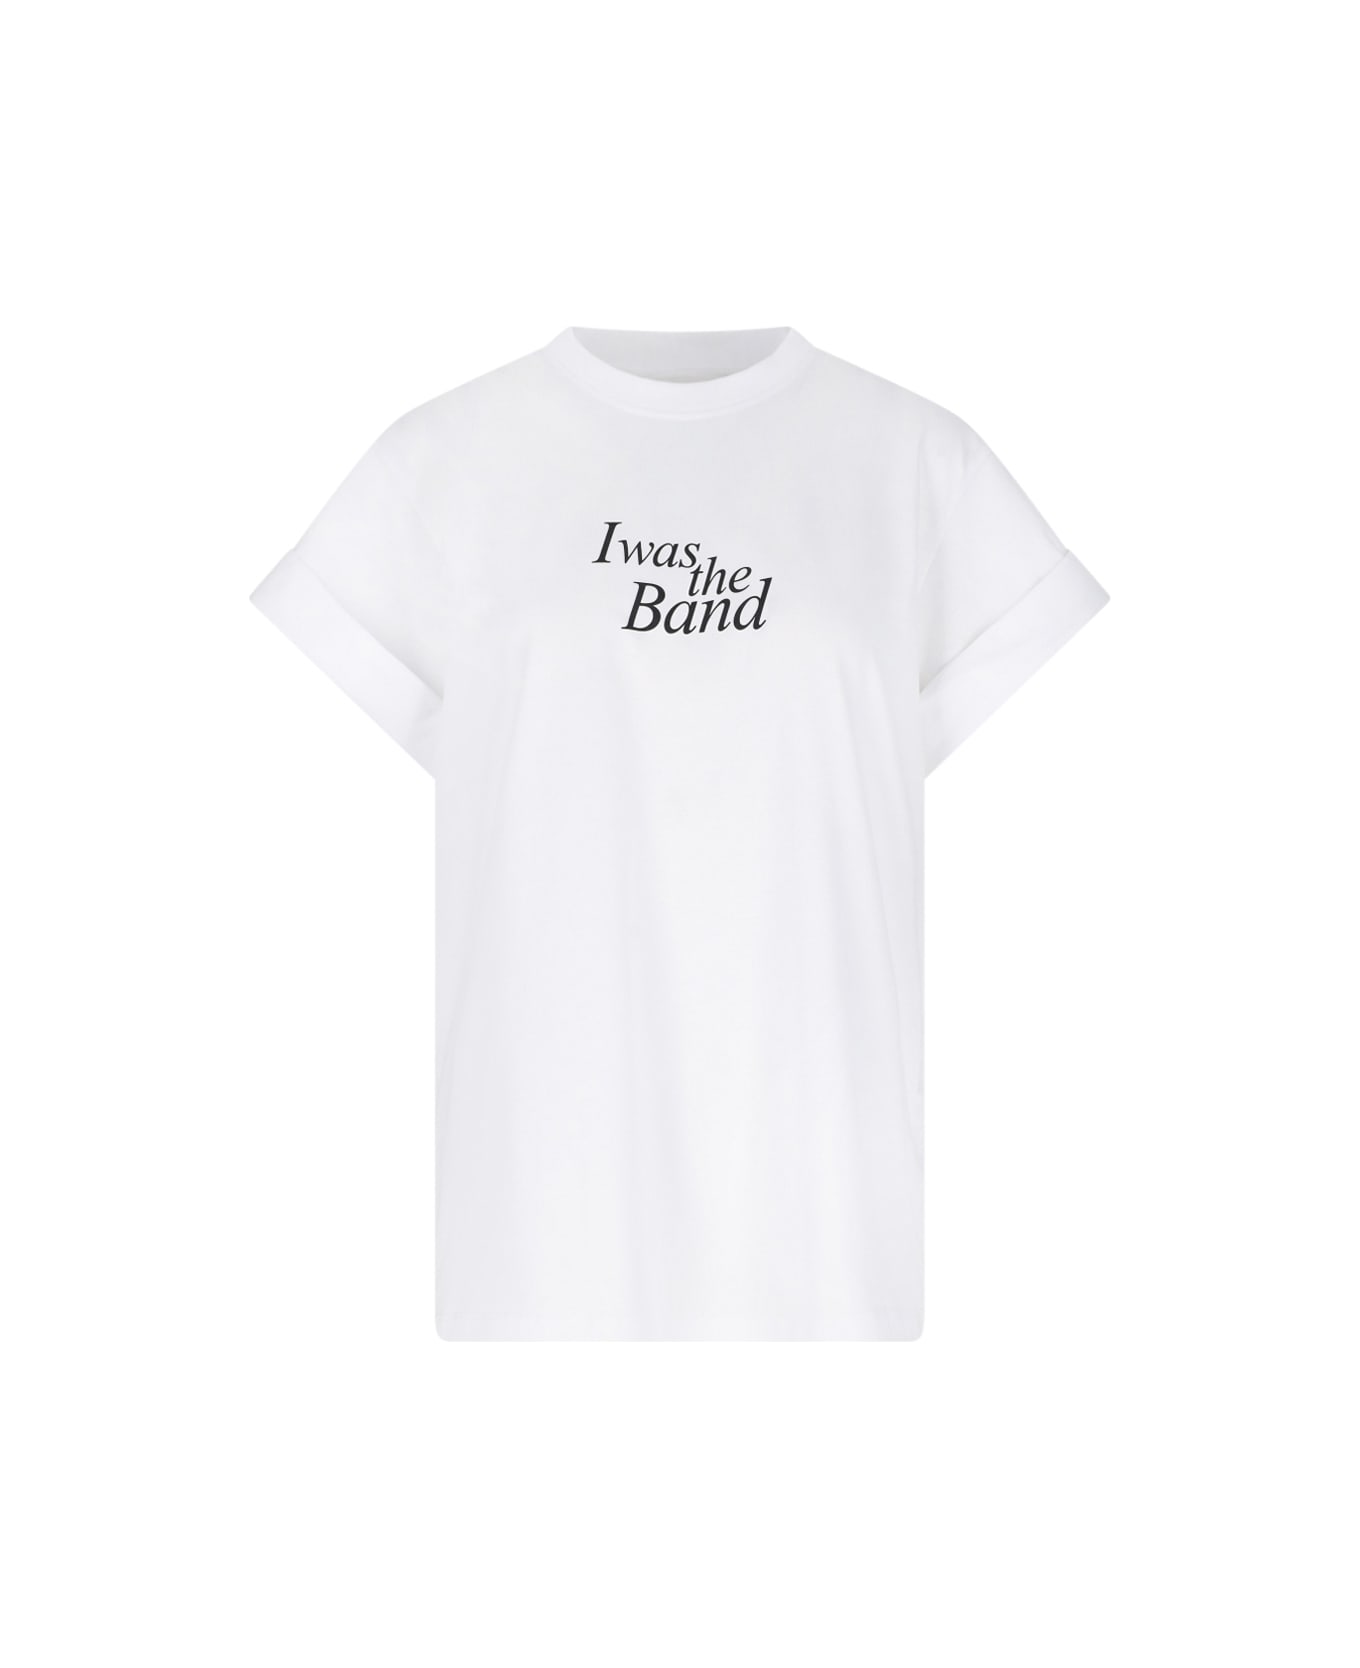 Victoria Beckham 'slogan Print' T-shirt - White Tシャツ